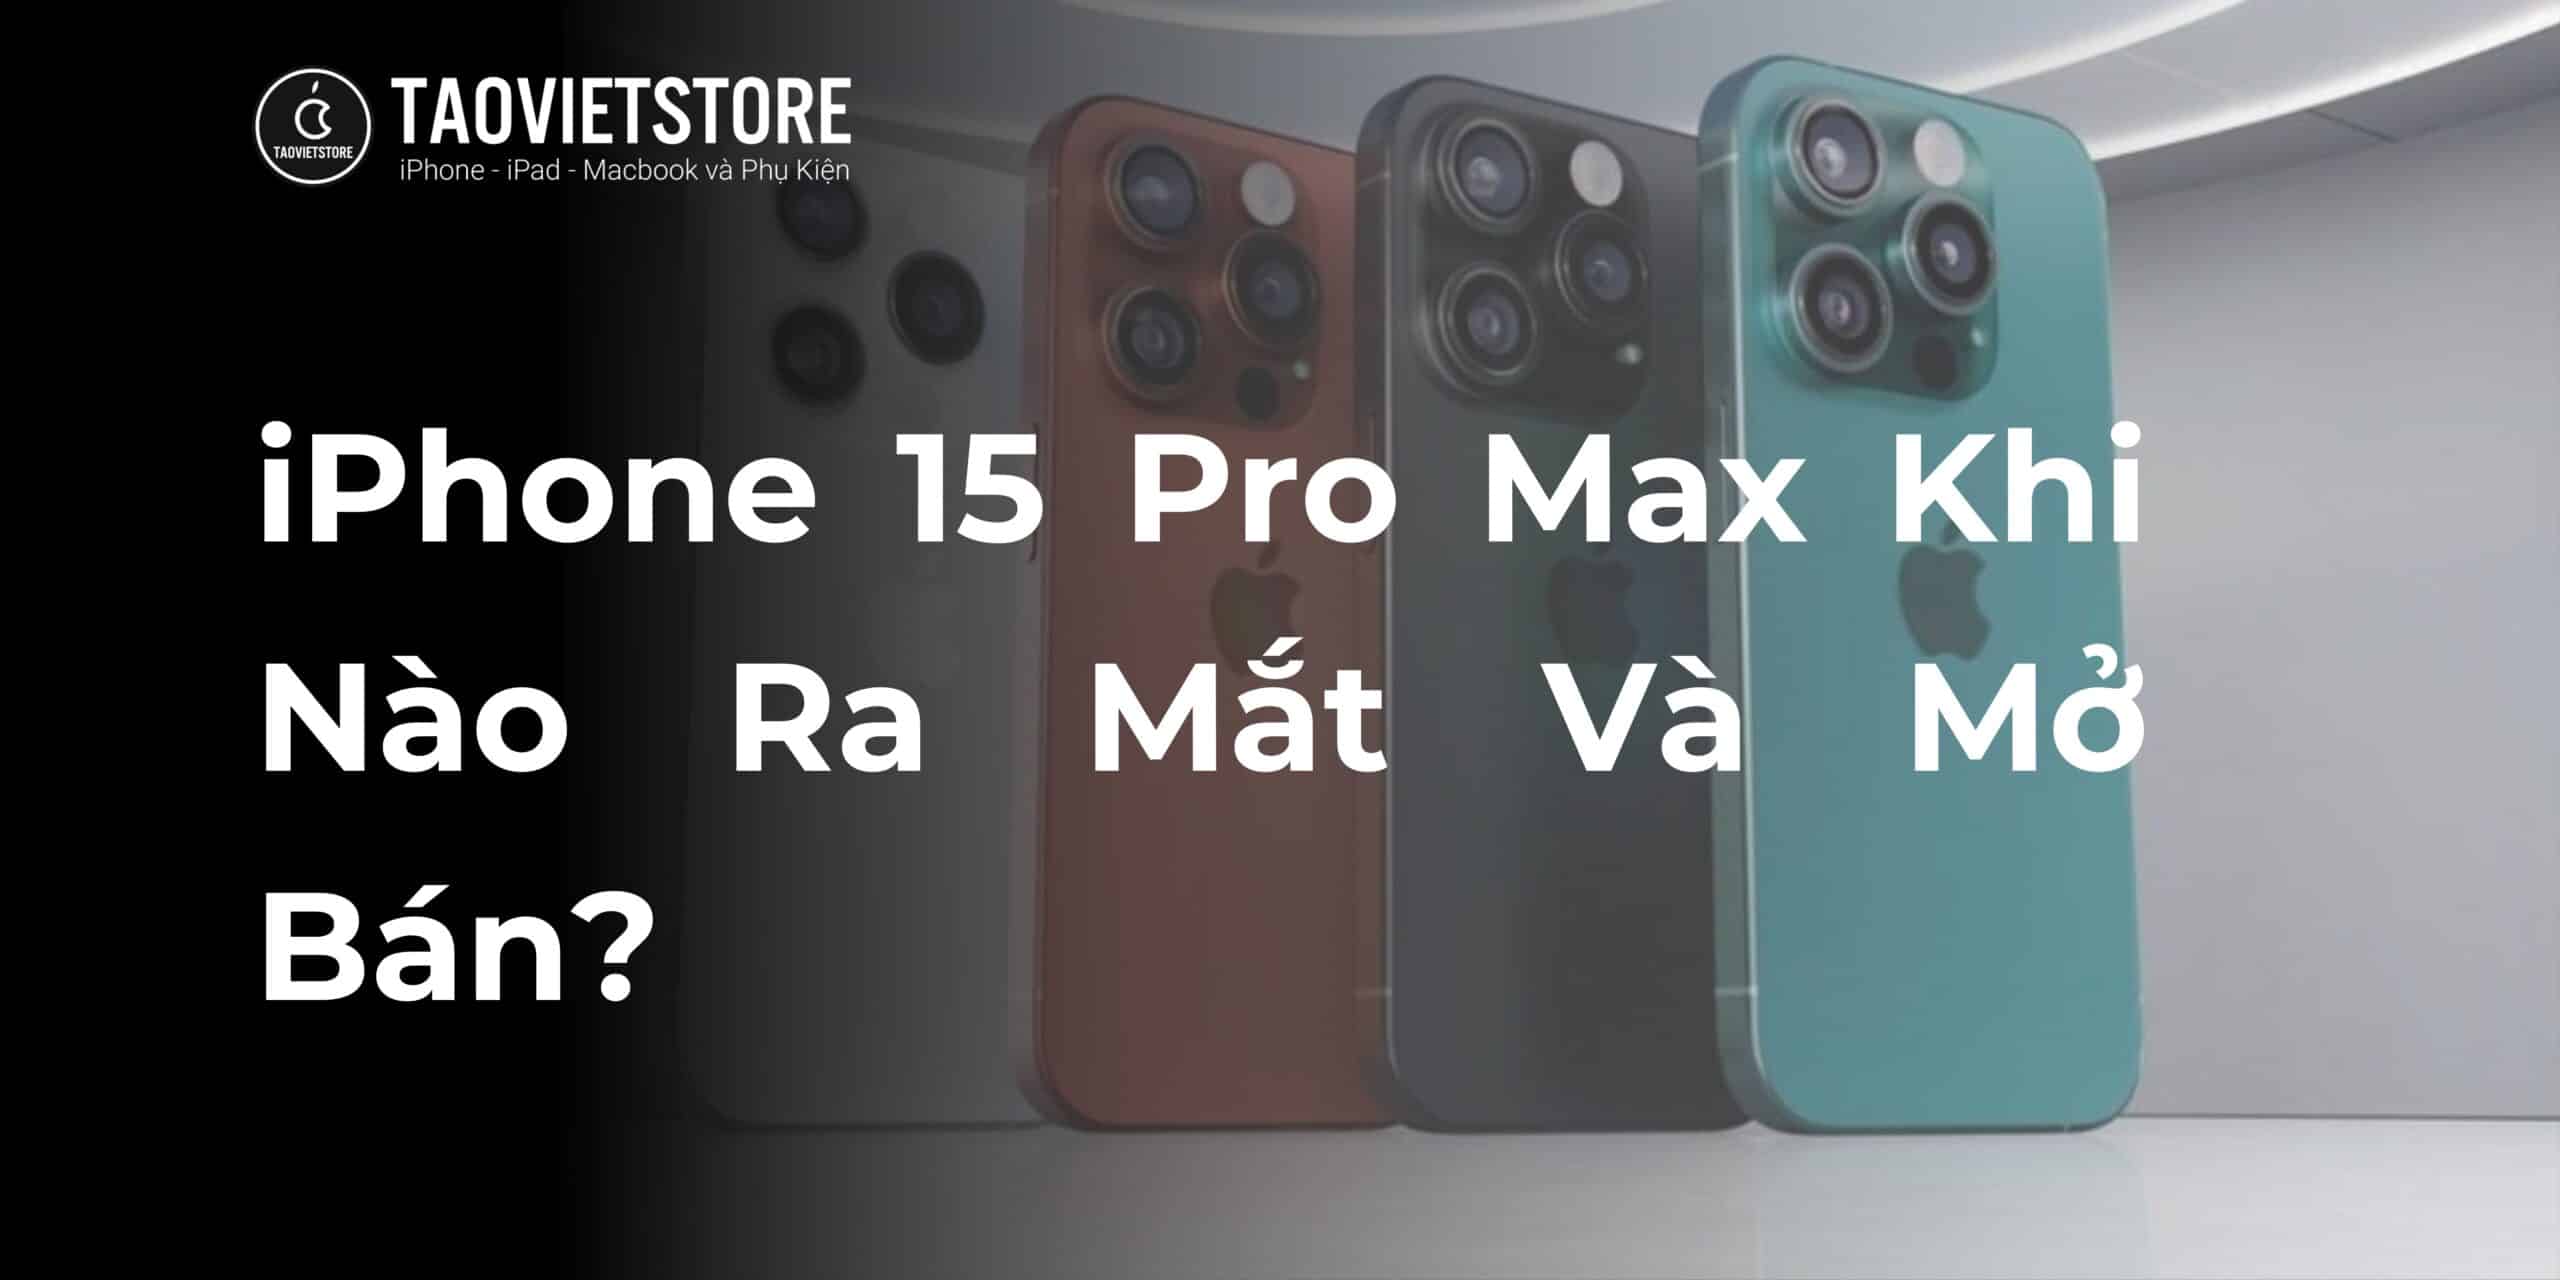 iPhone 15 Pro Max Khi Nào Ra Mắt Và Mở Bán?